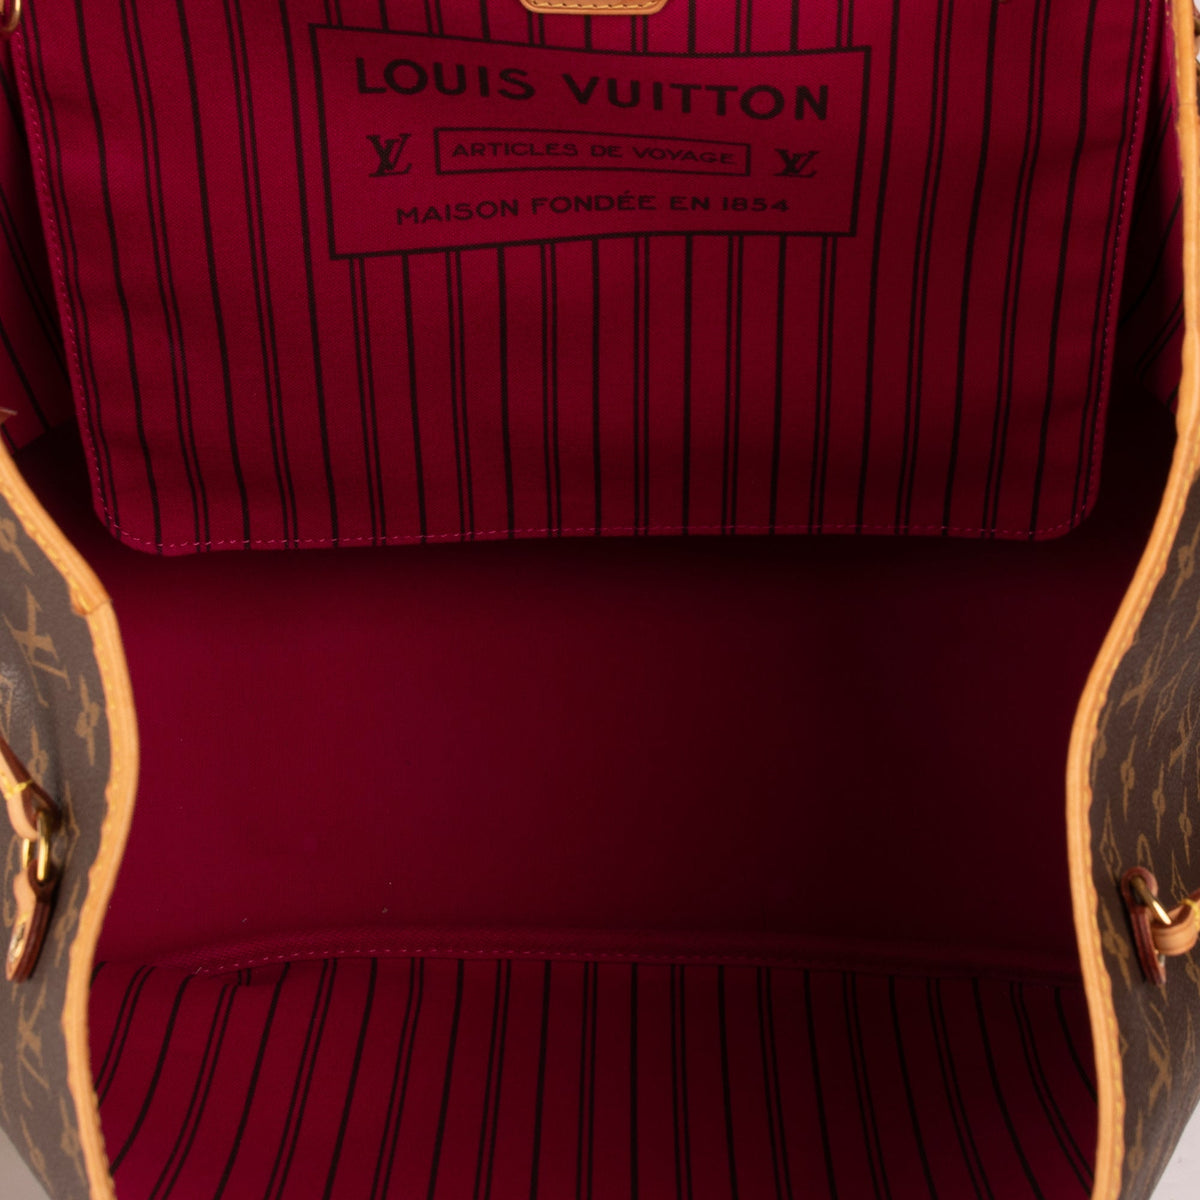 Louis Vuitton Monogram Articles de Voyage Neverfull GM